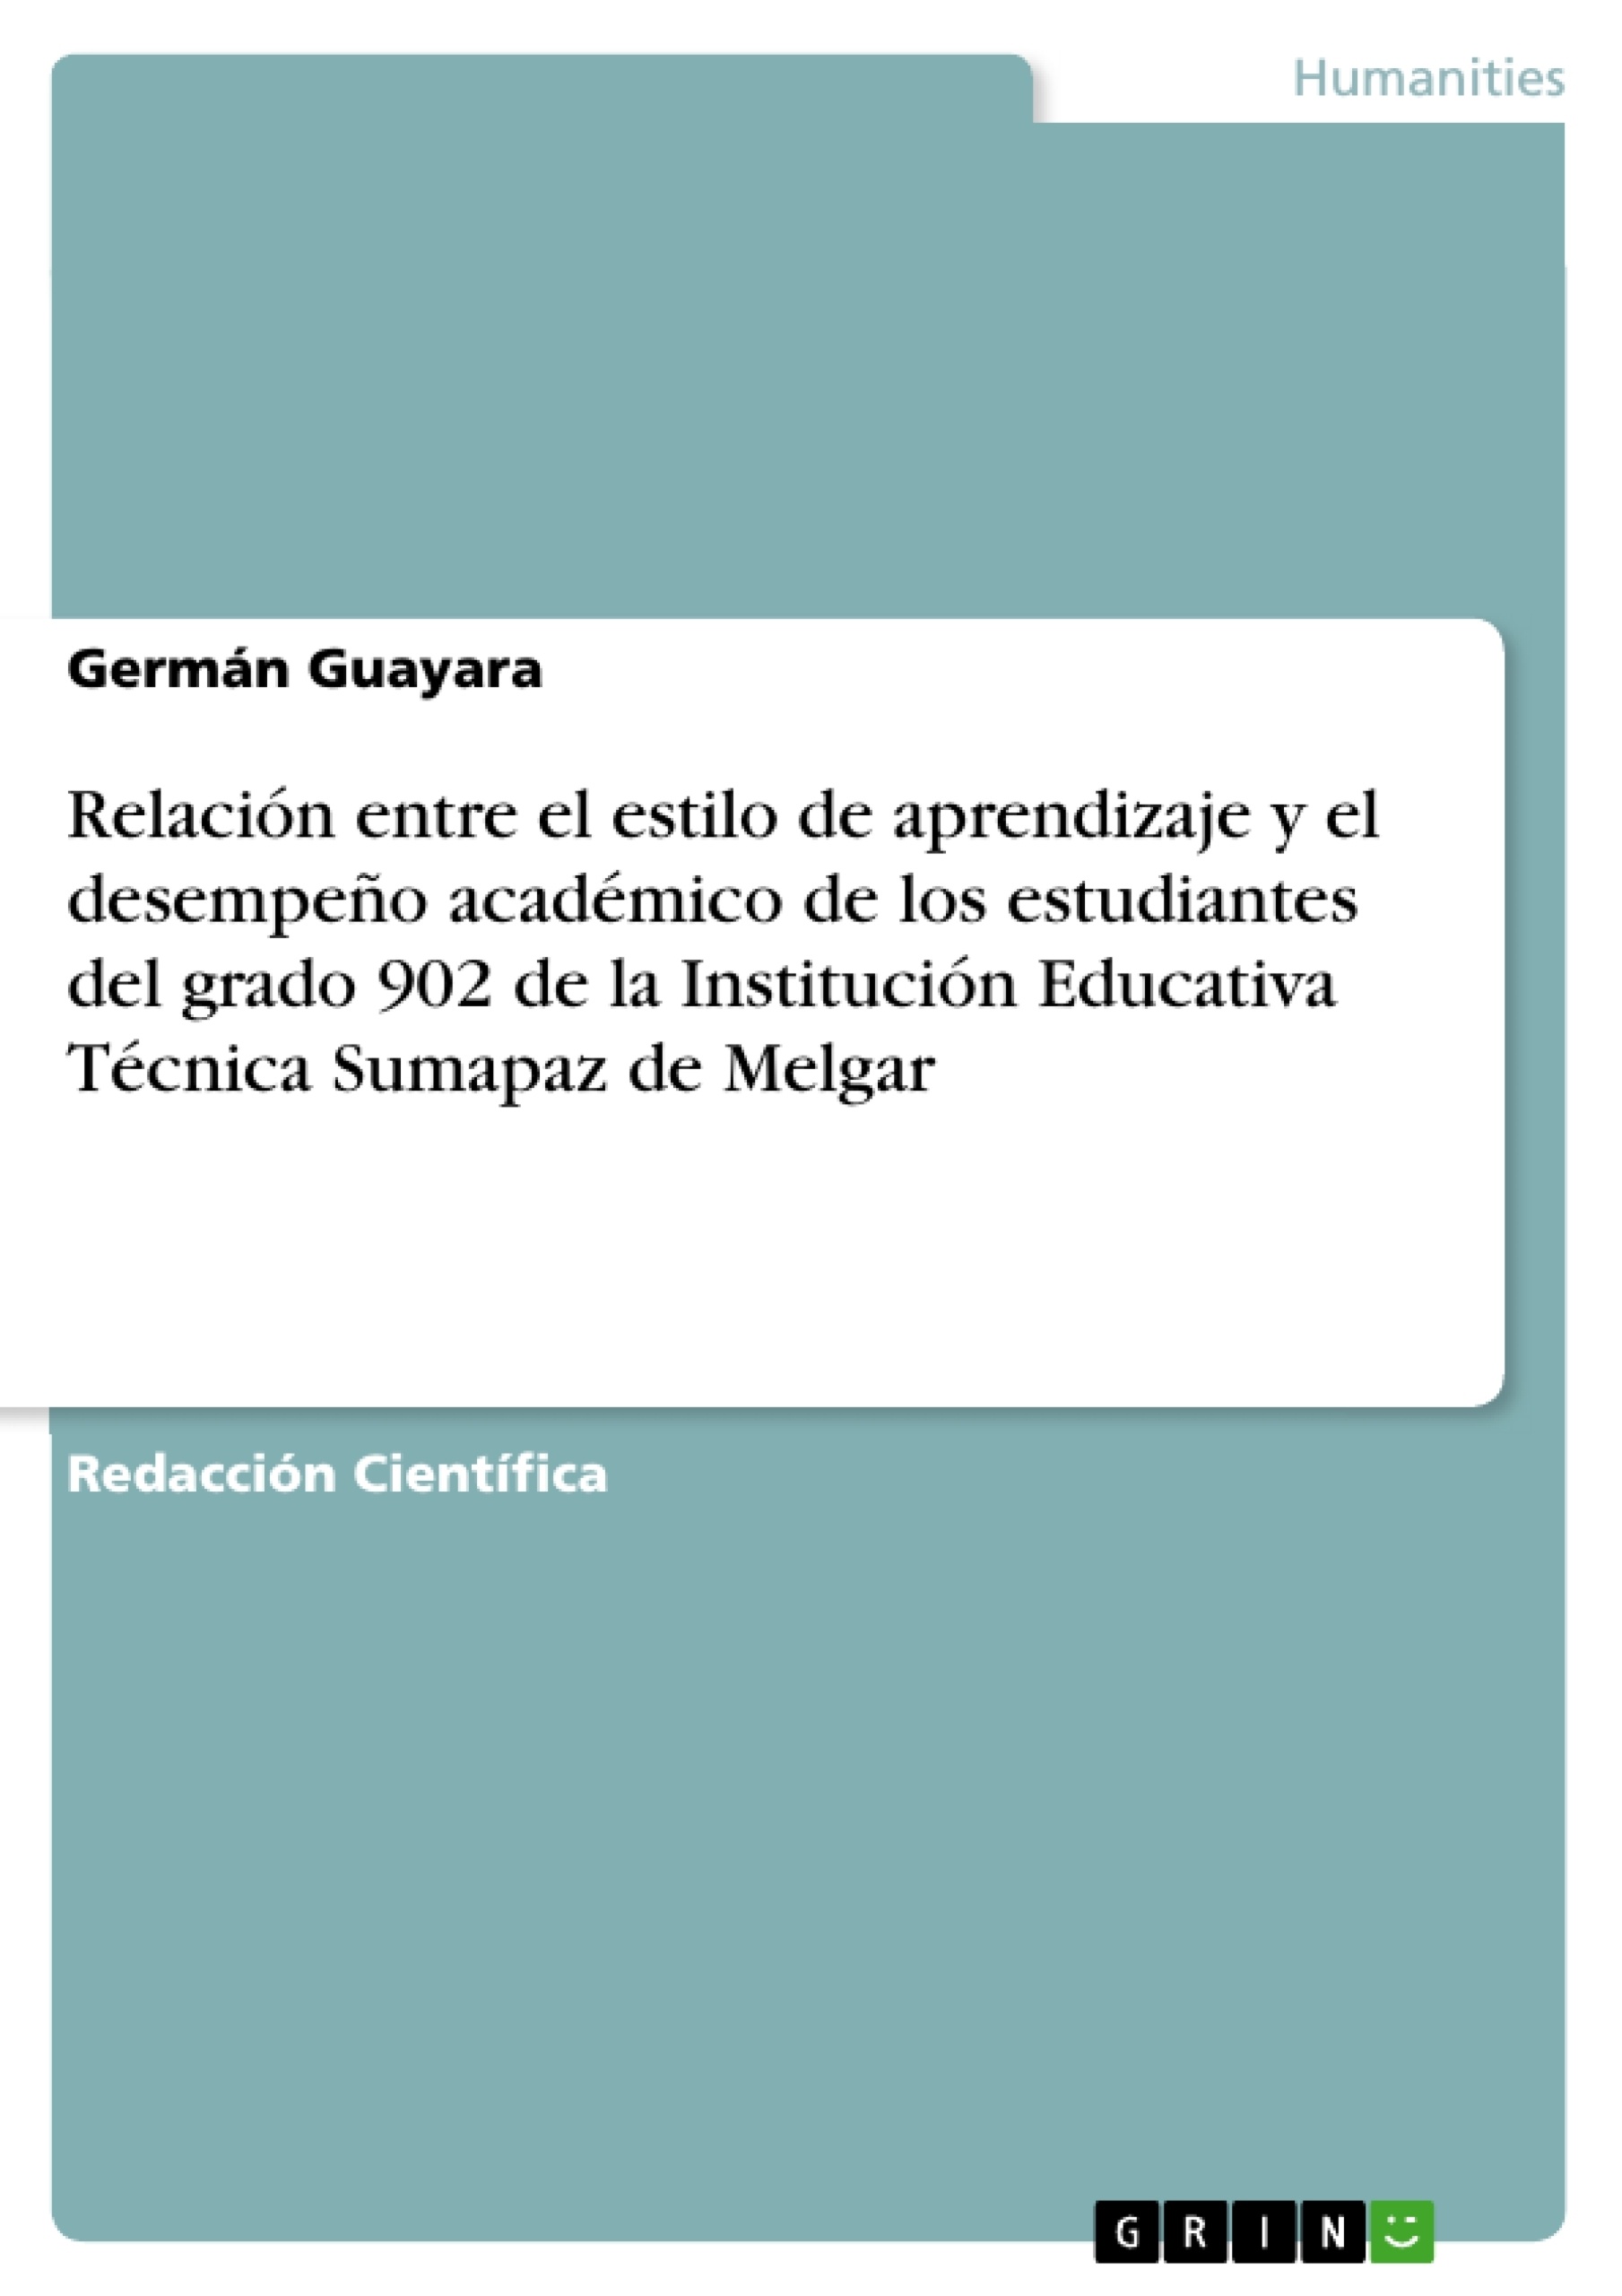 Título: Relación entre el estilo de aprendizaje y el desempeño académico de los estudiantes del grado 902 de la Institución Educativa Técnica Sumapaz de Melgar